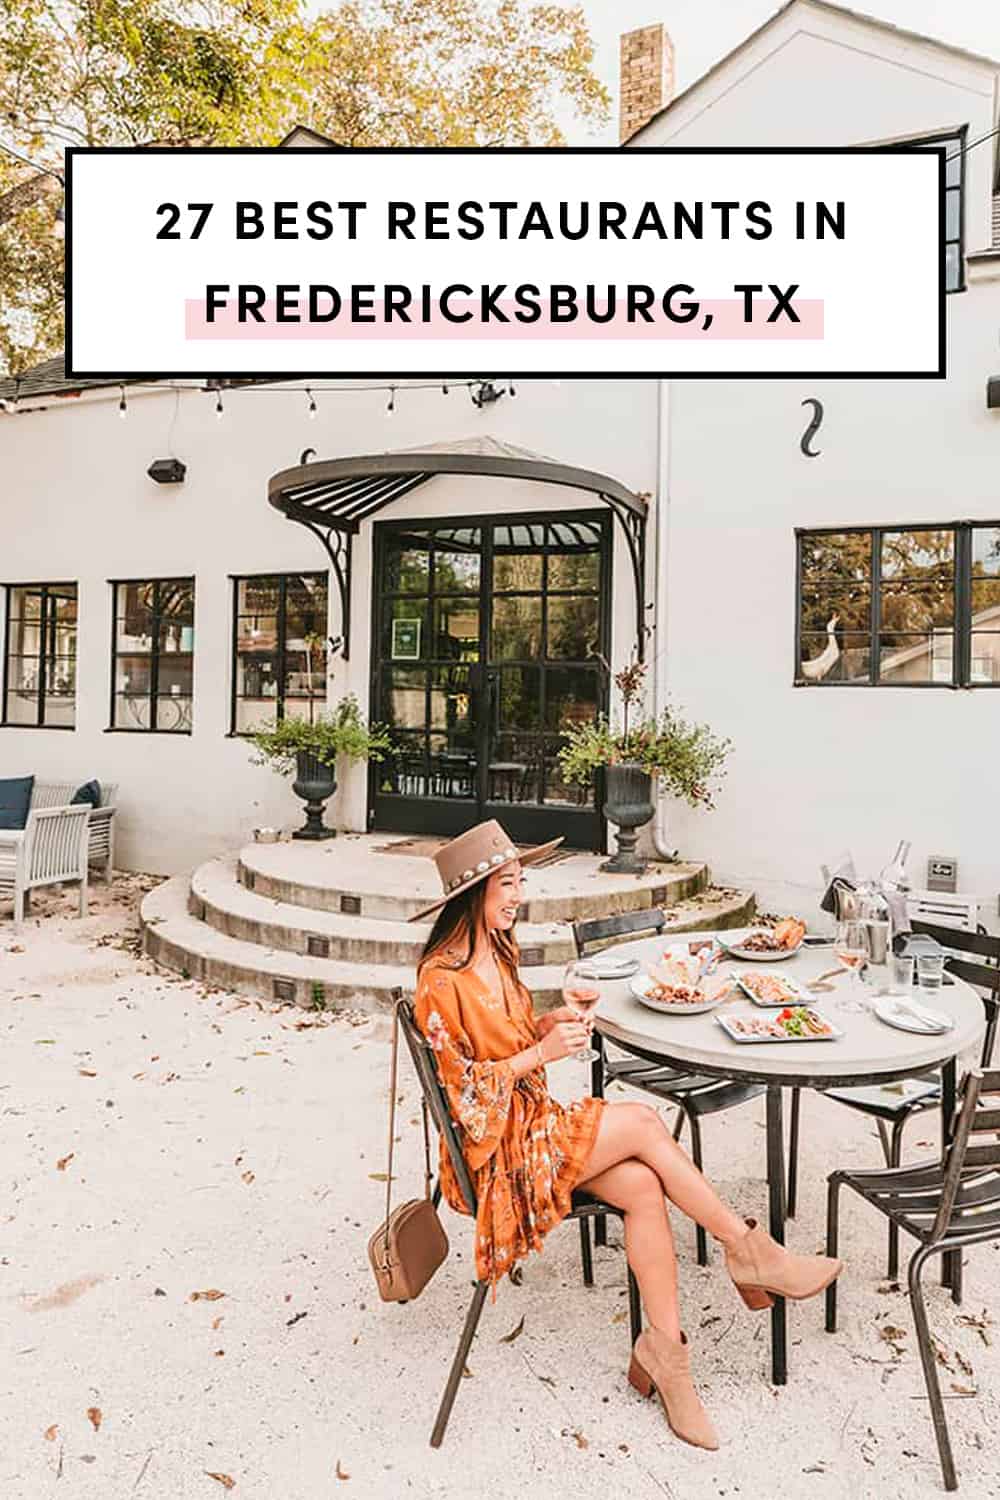 Best restaurants in Fredericksburg Texas